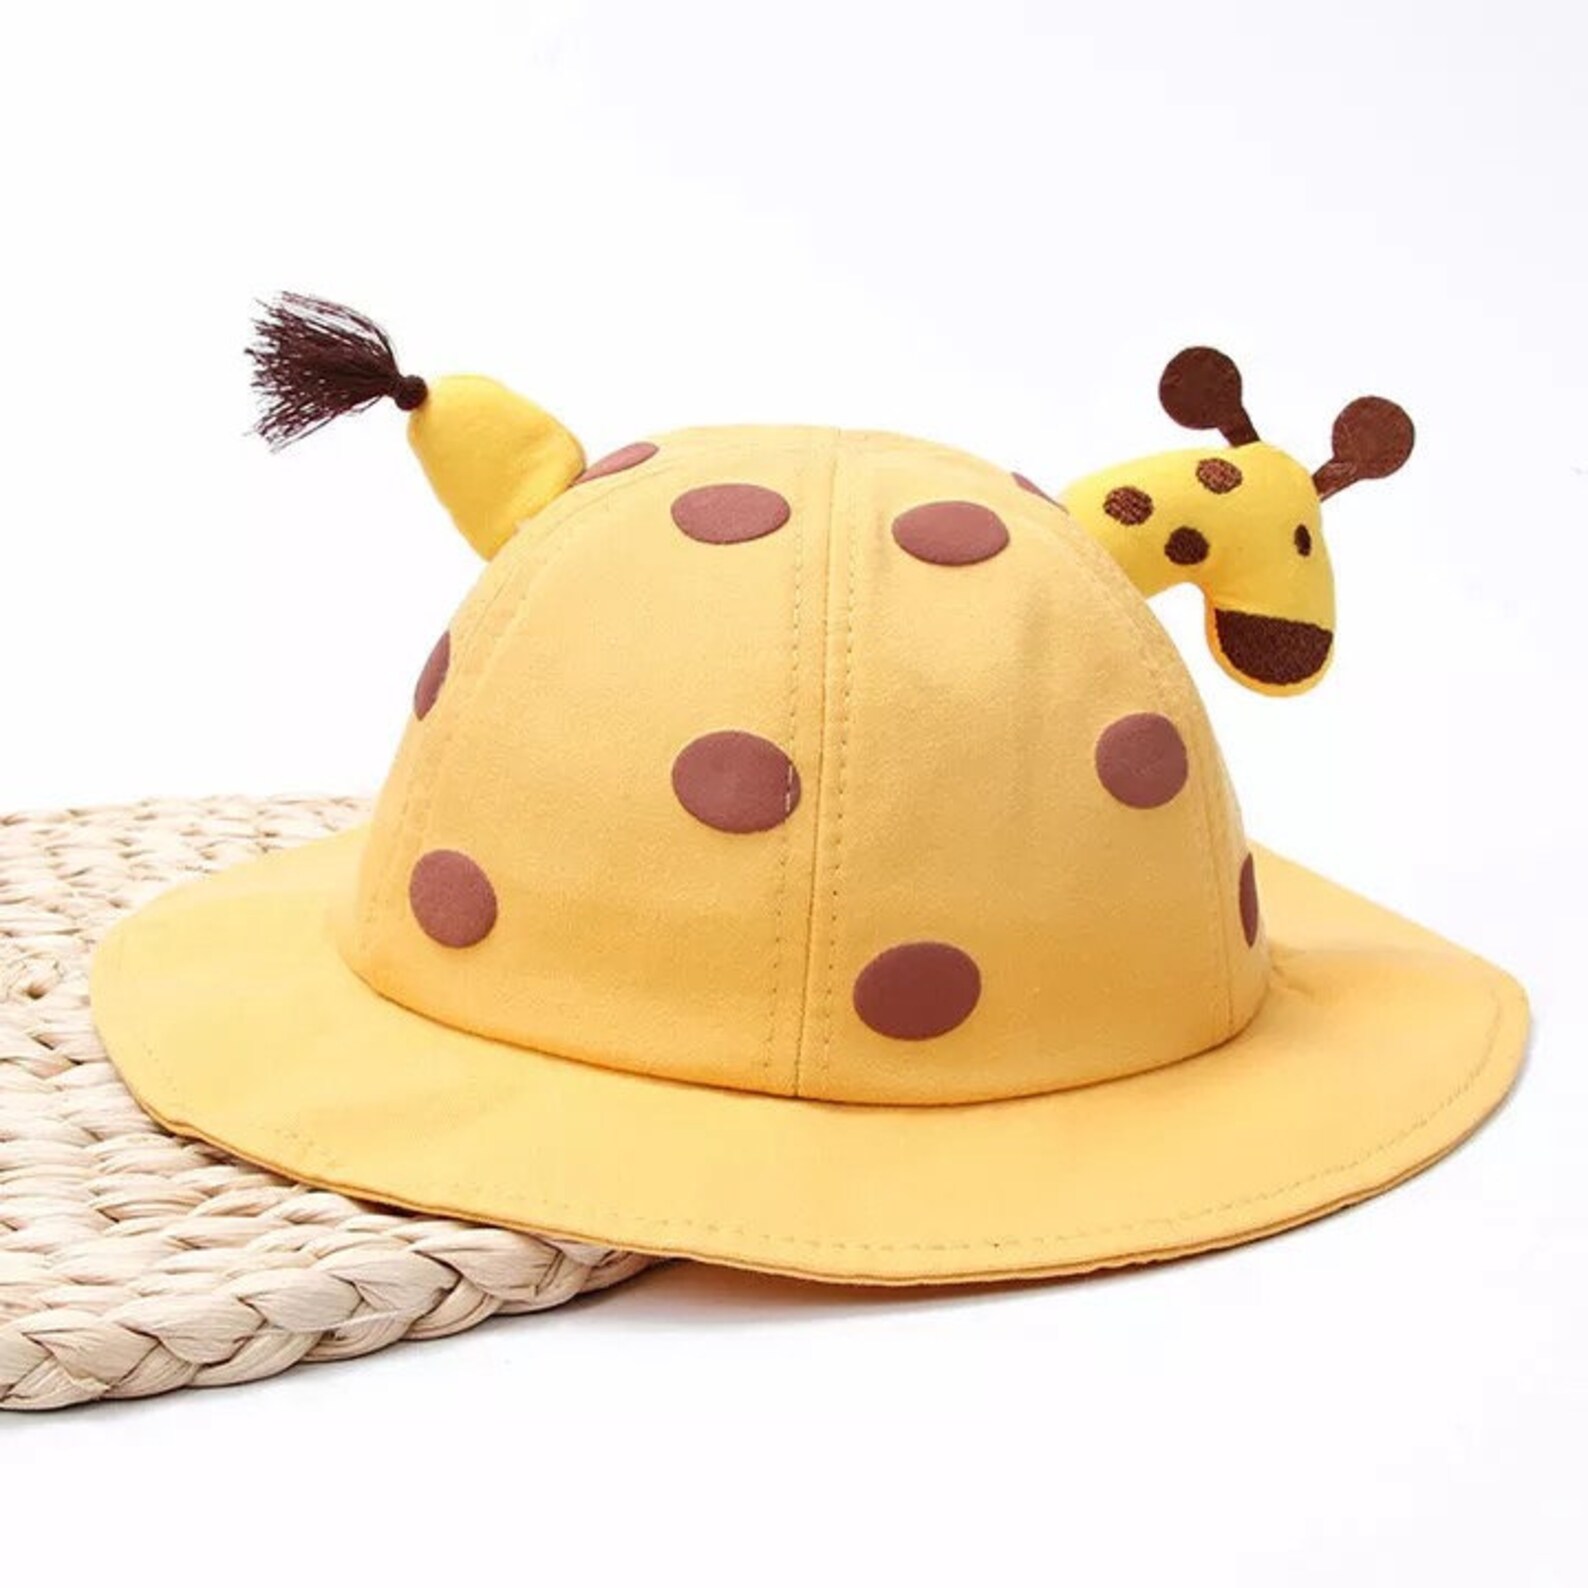 Baby Boy & Girls Giraffe Safari Sun Summer Hat available in | Etsy